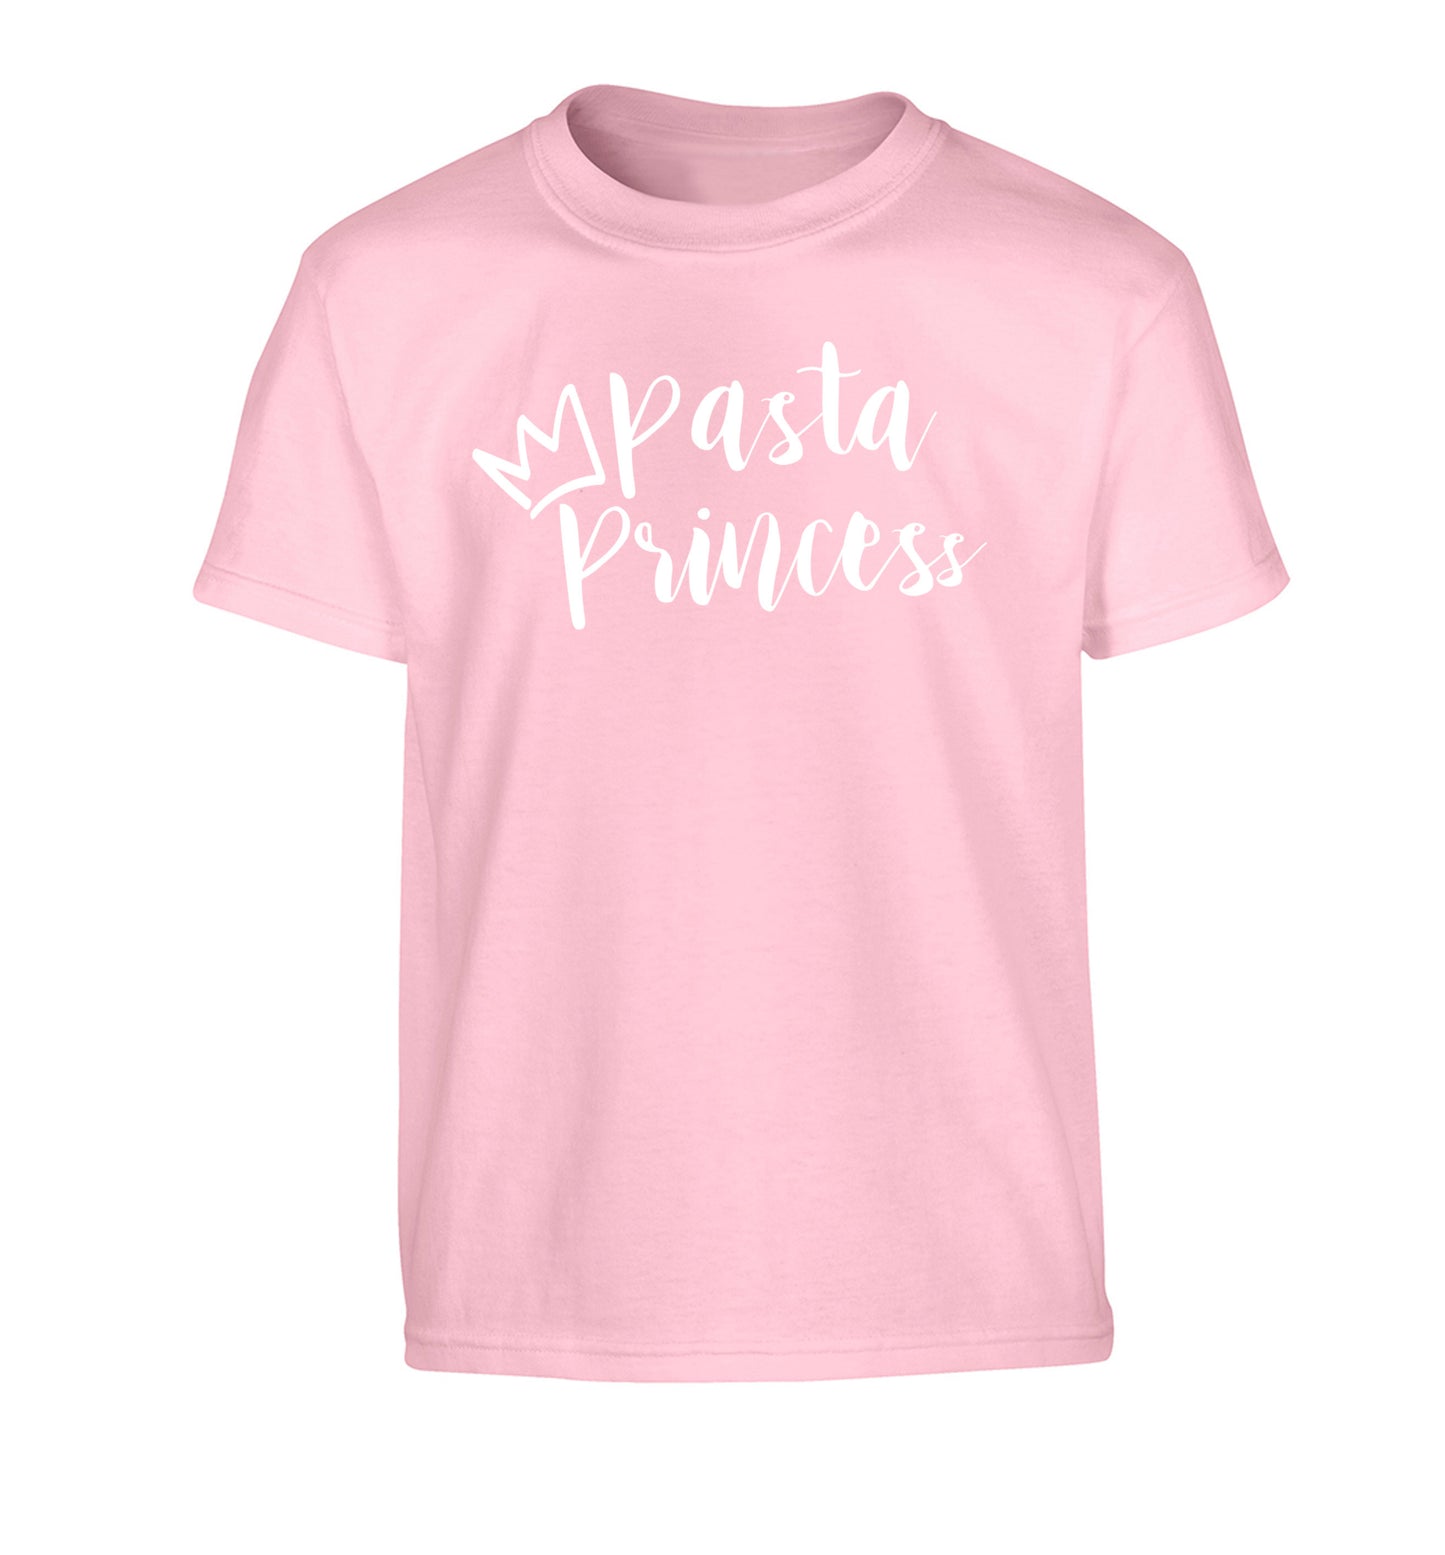 Pasta Princess Children's light pink Tshirt 12-14 Years